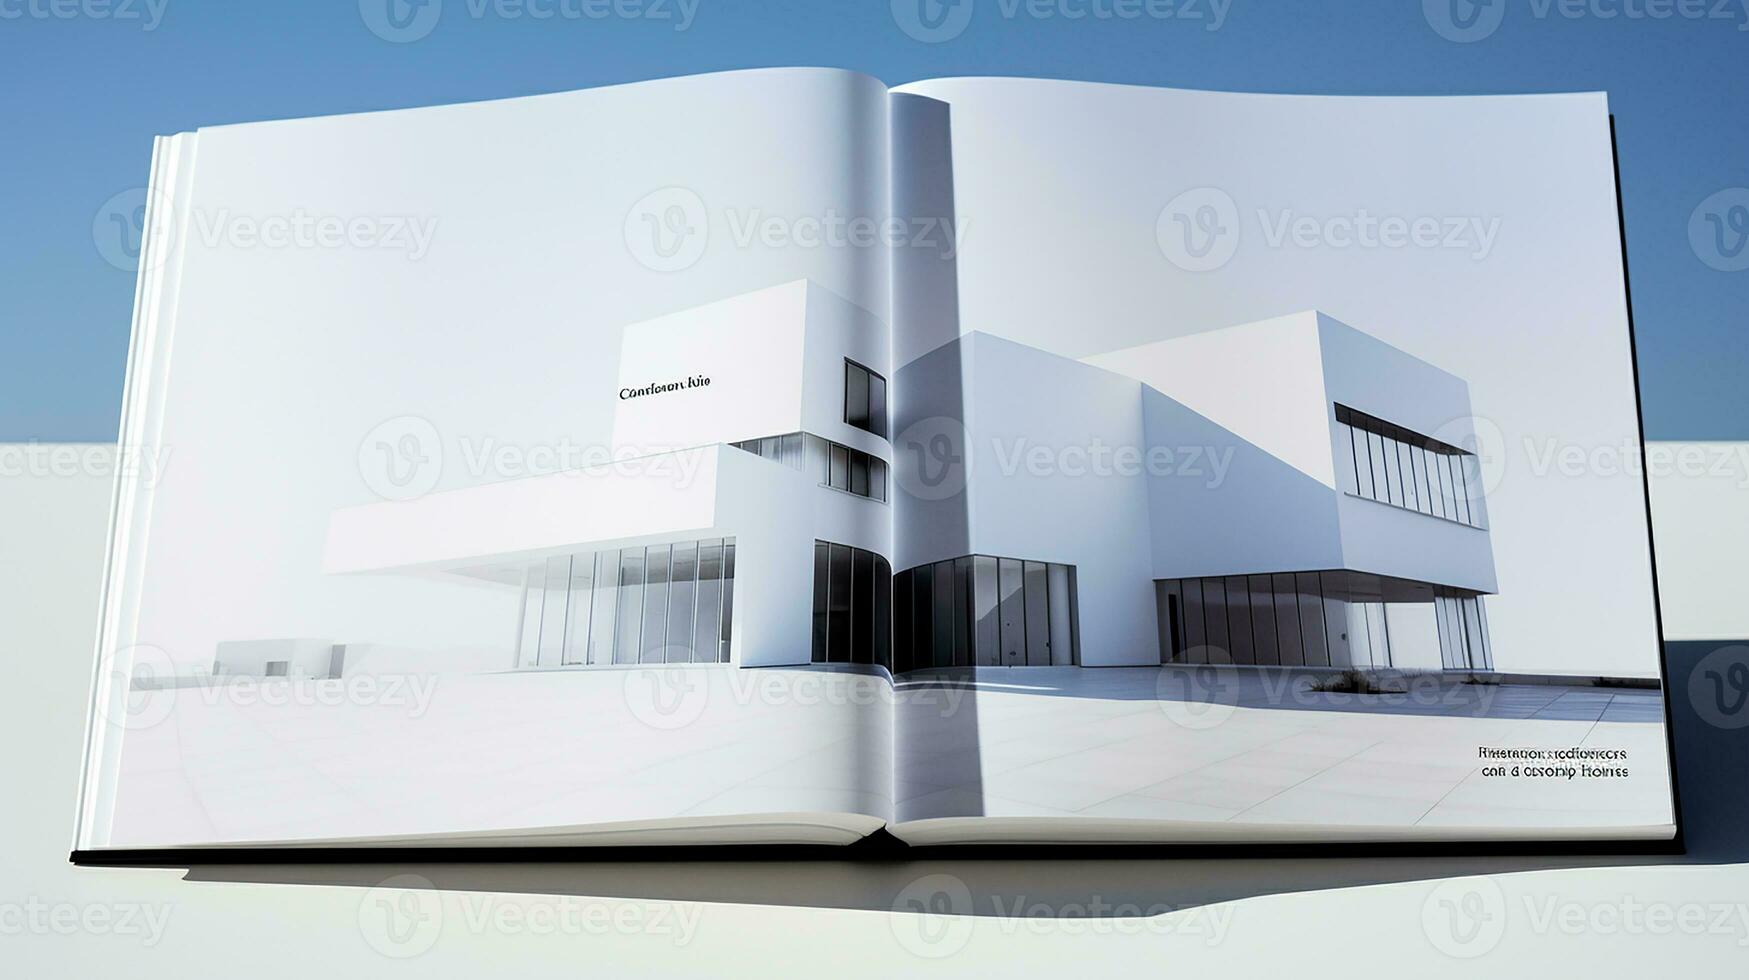 Aperto rivista con moderno e minimalista edificio e blu cielo. 3d resa. foto